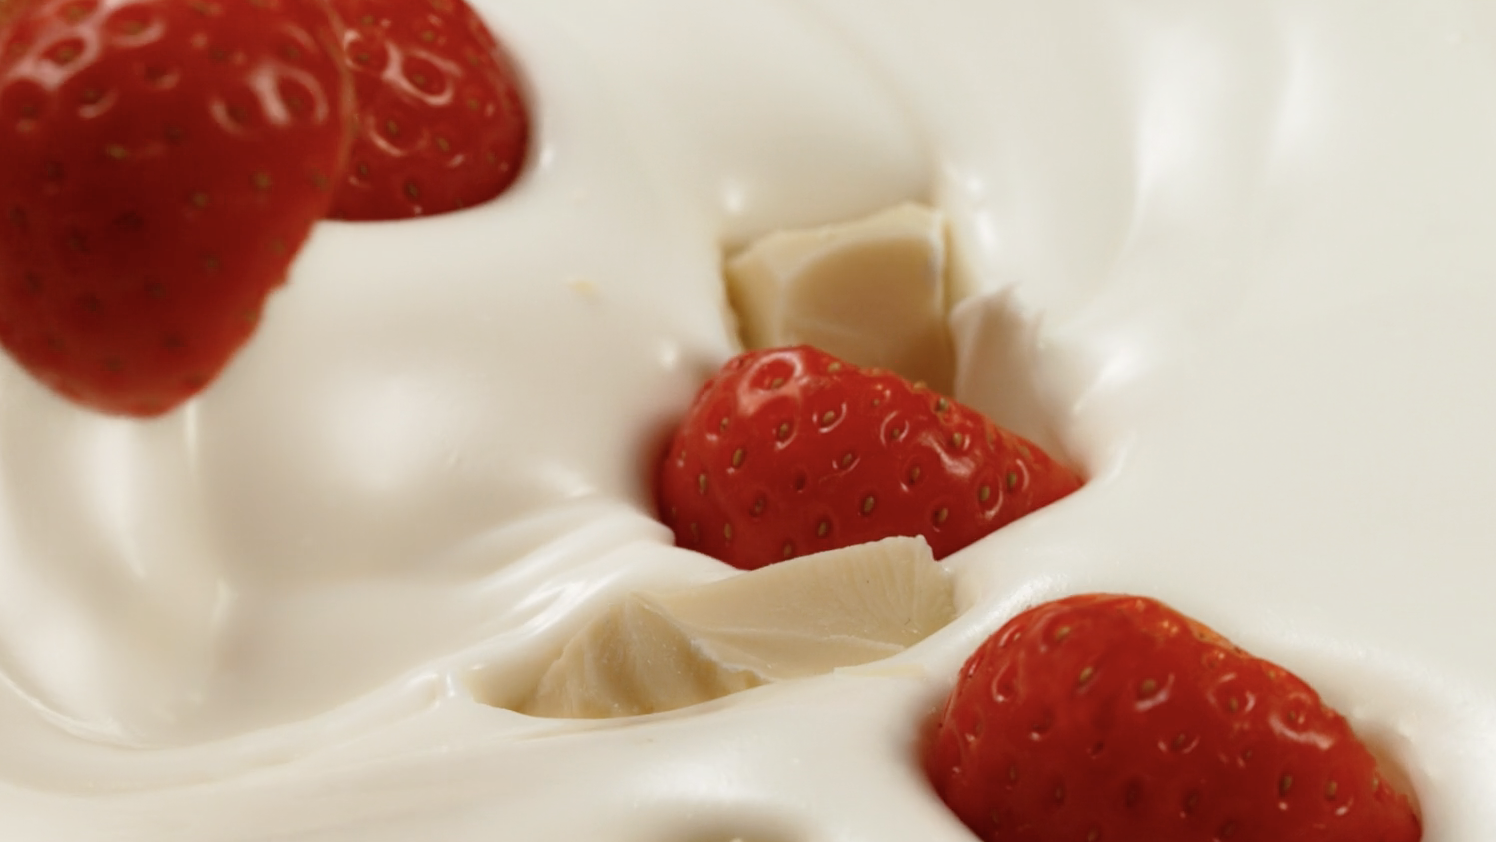 Zuivelhoeve – Strawberry love